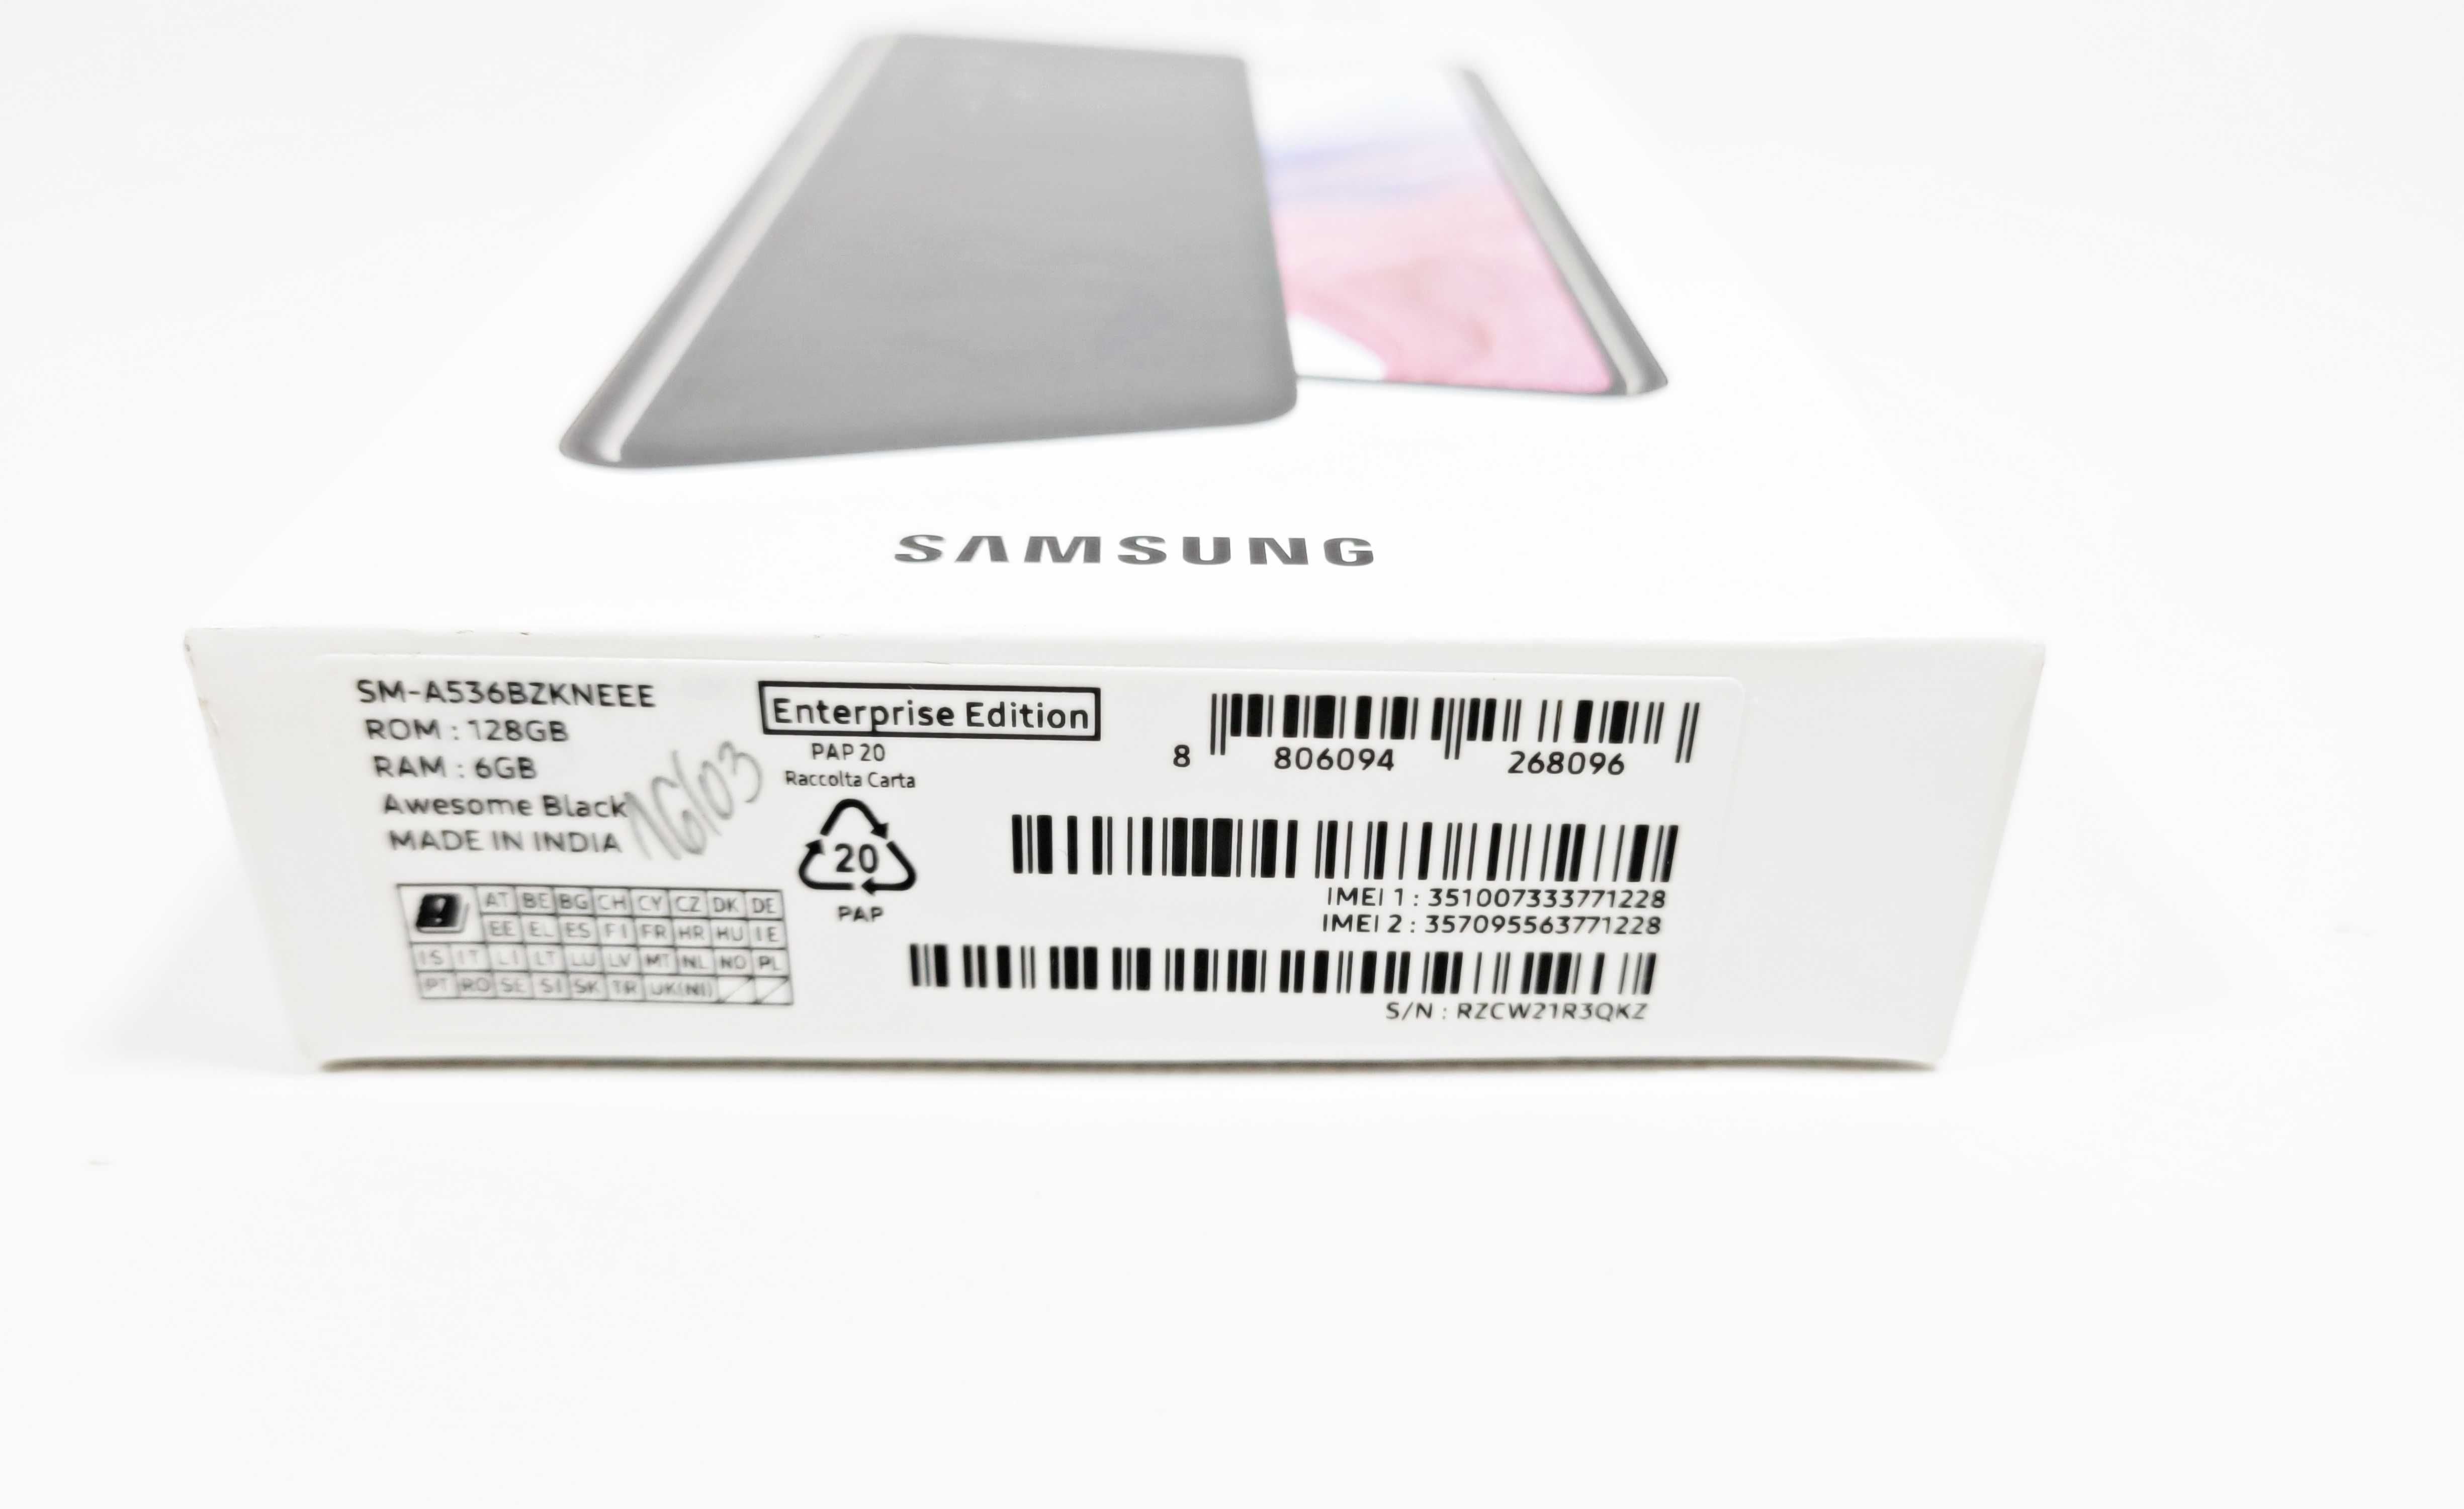 Samsung Galaxy A53 5G 6/128GB Gwarancja BEZ BLOKAD K&B Handel